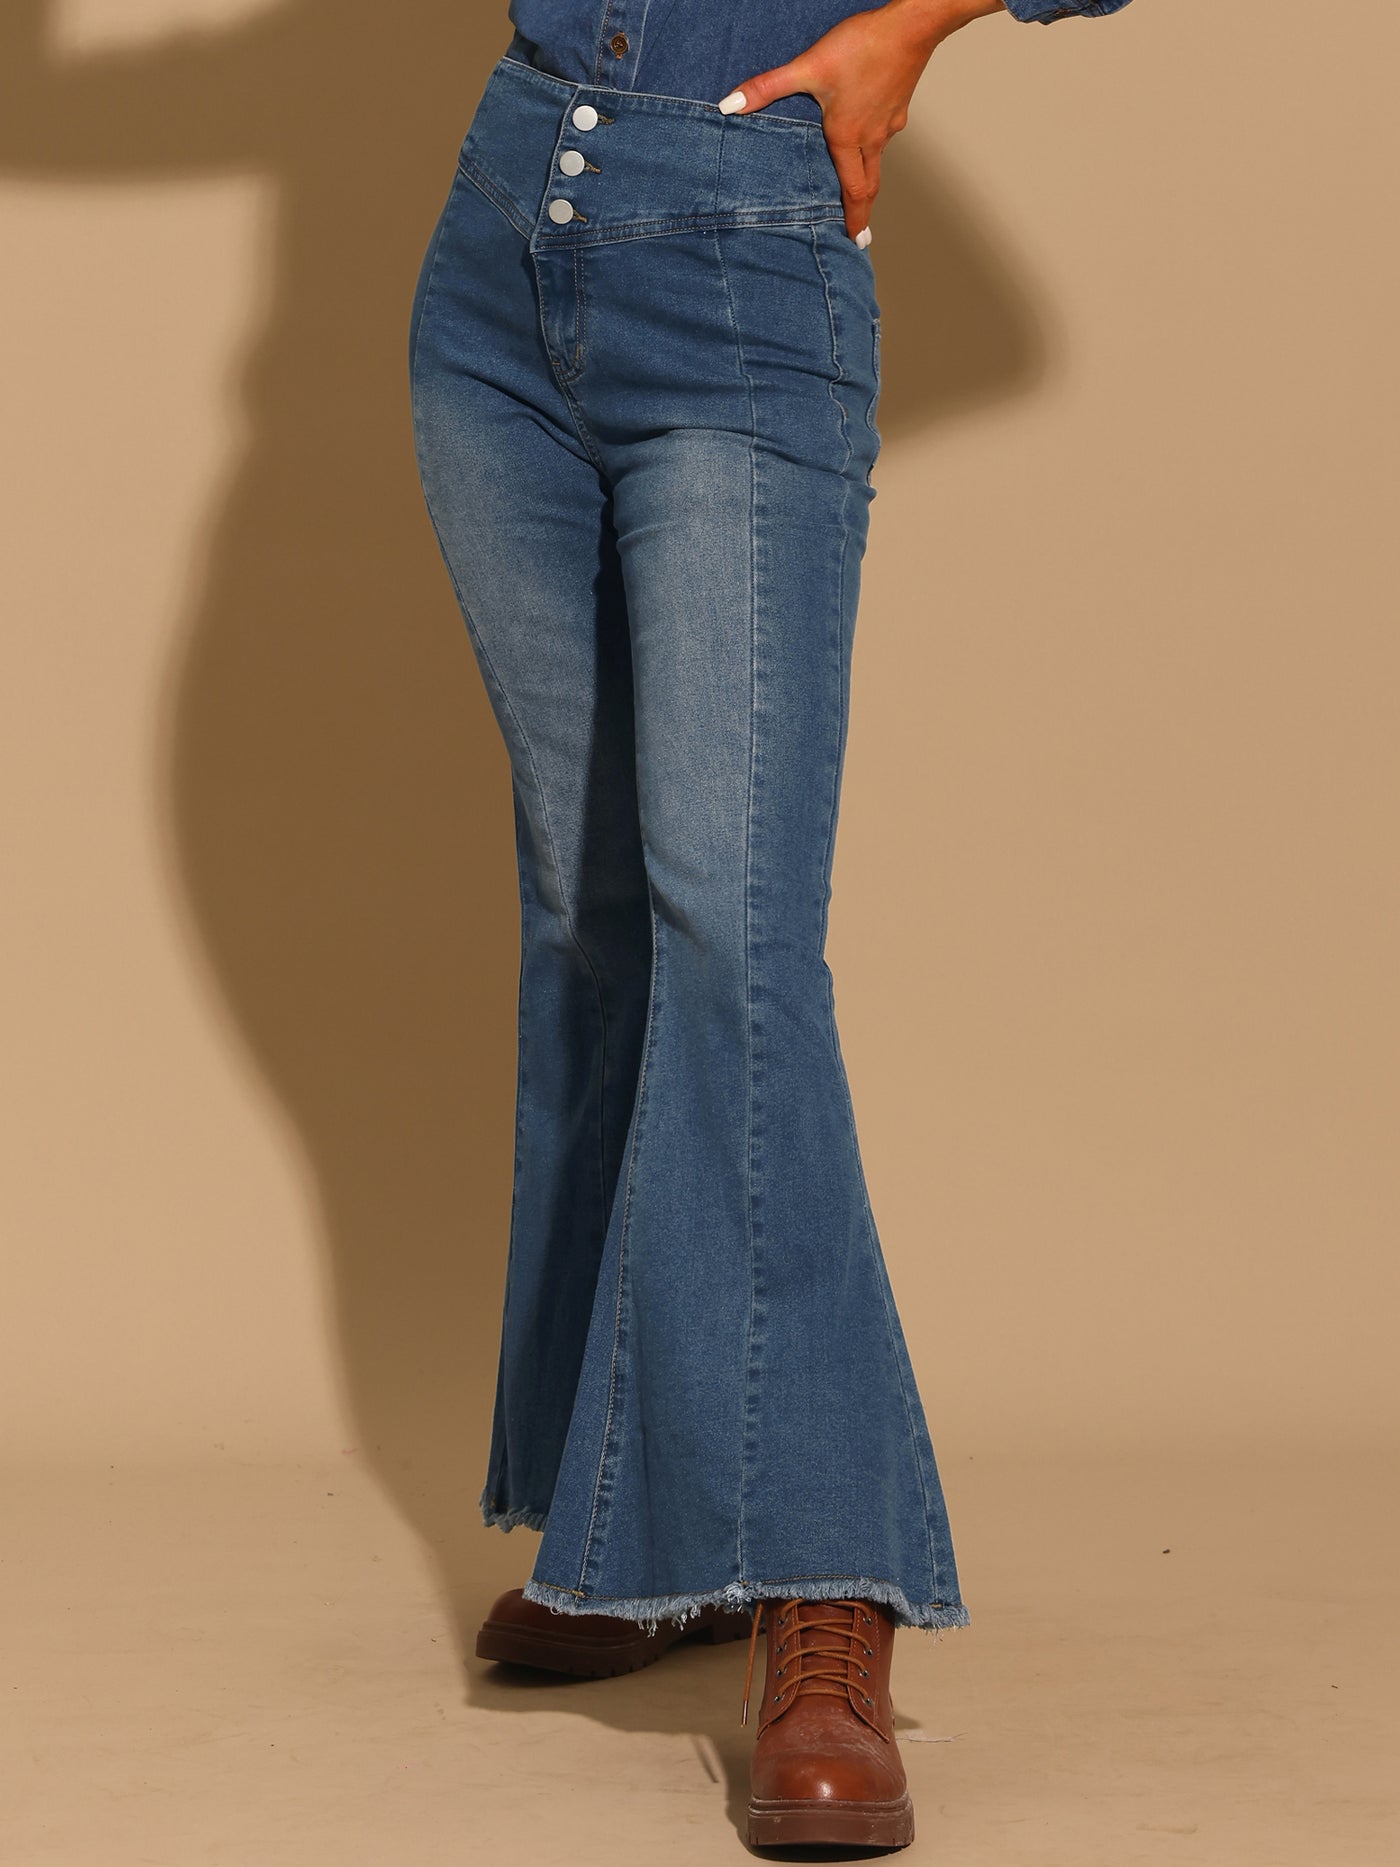 Allegra K Women's Bell Bottom Jeans High Rised Classic Flared Denim Pants